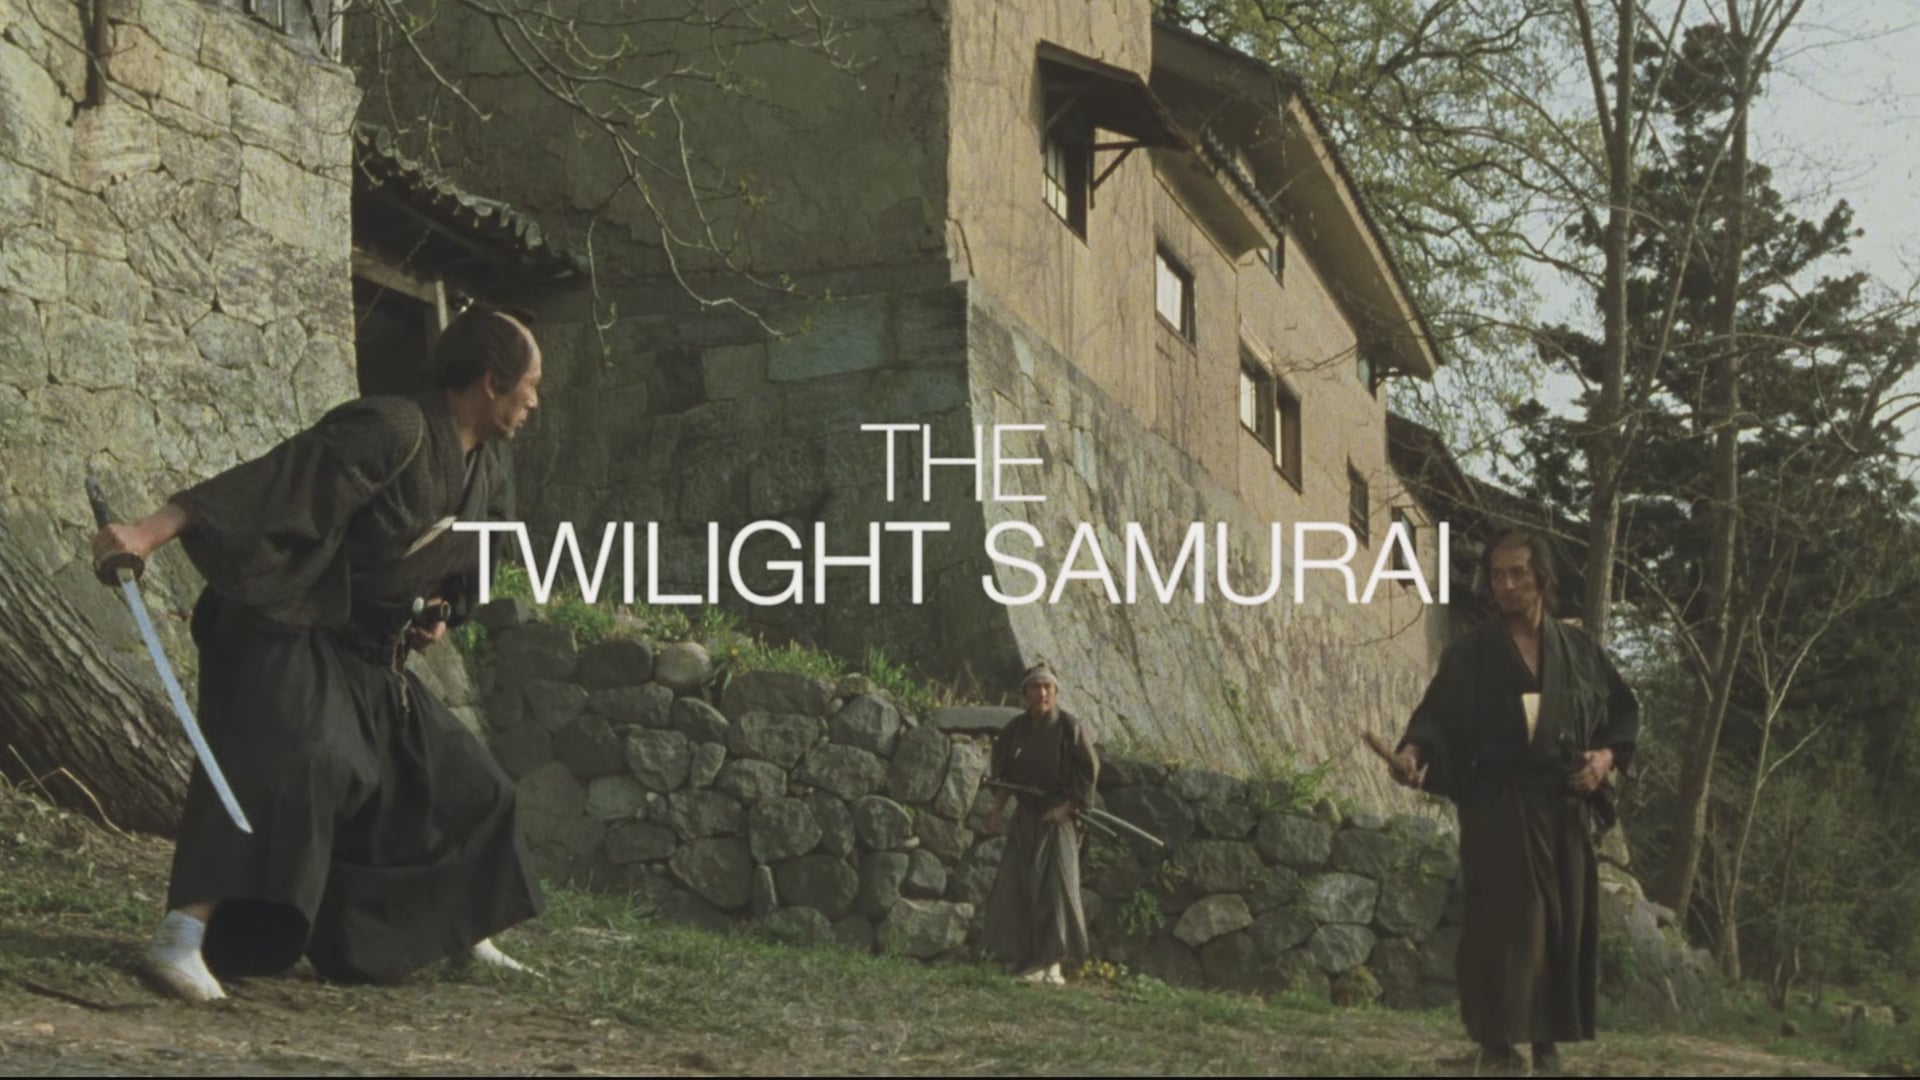 The Twilight Samurai | Trailer on Vimeo